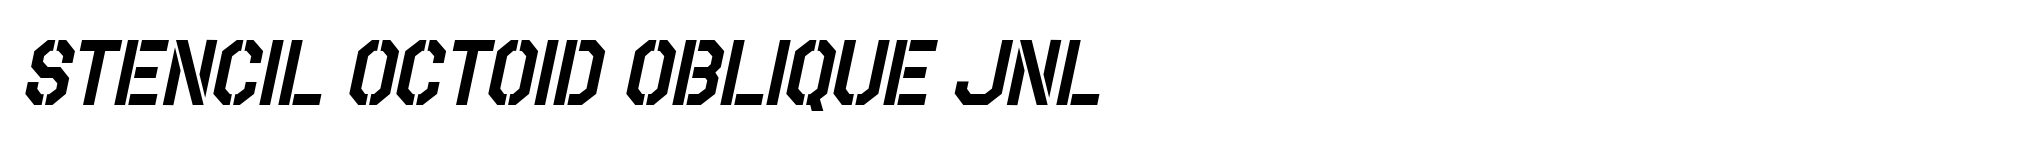 Stencil Octoid Oblique JNL image